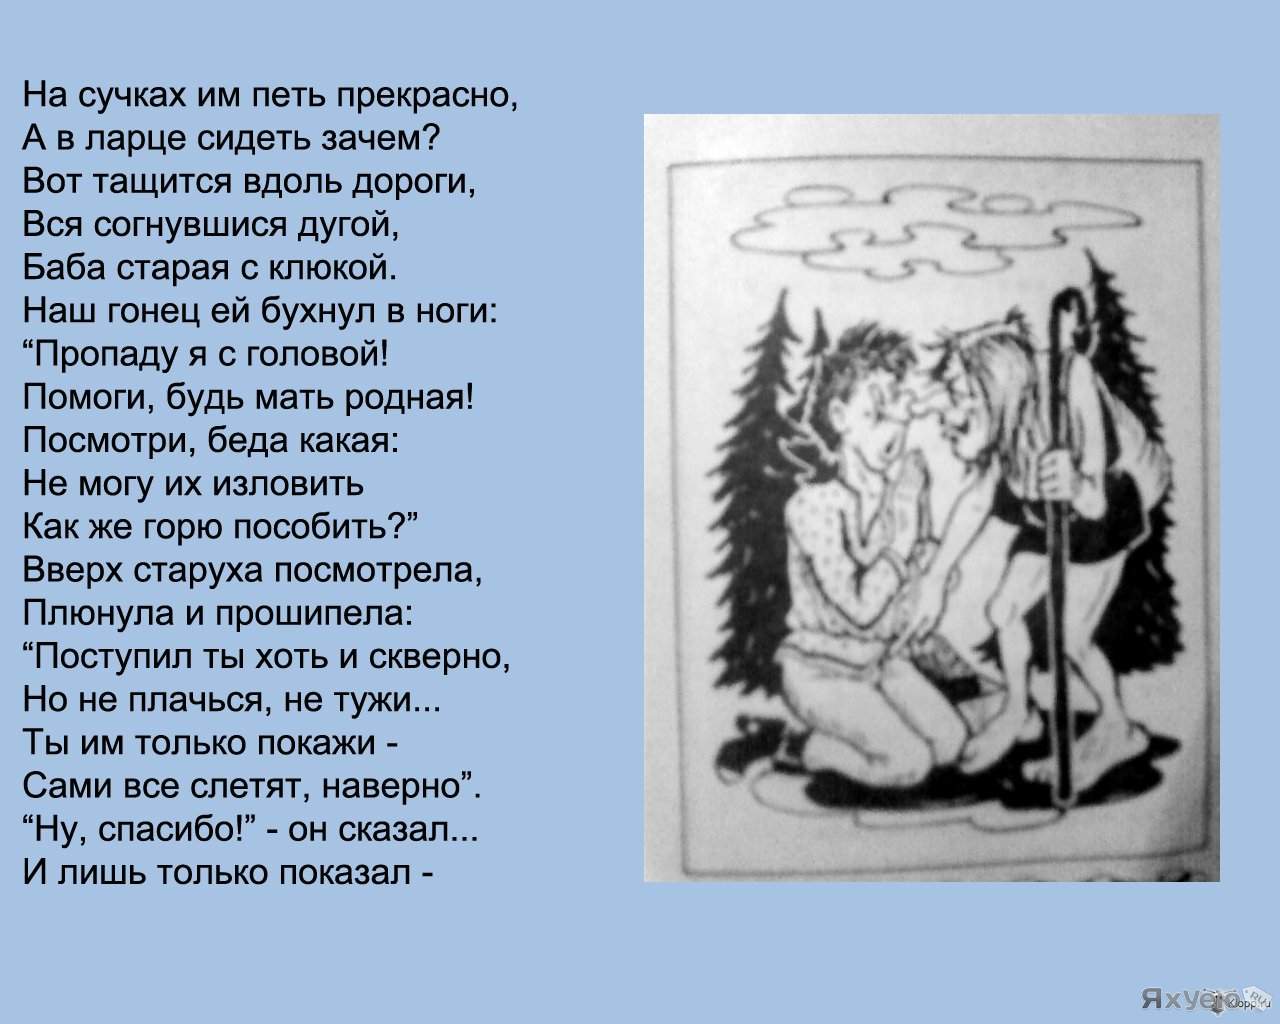 Aleksandr pushkin - текст песни царь никита и 40 его дочерей ( tsar' nikita i 40 yego docherey) - ru